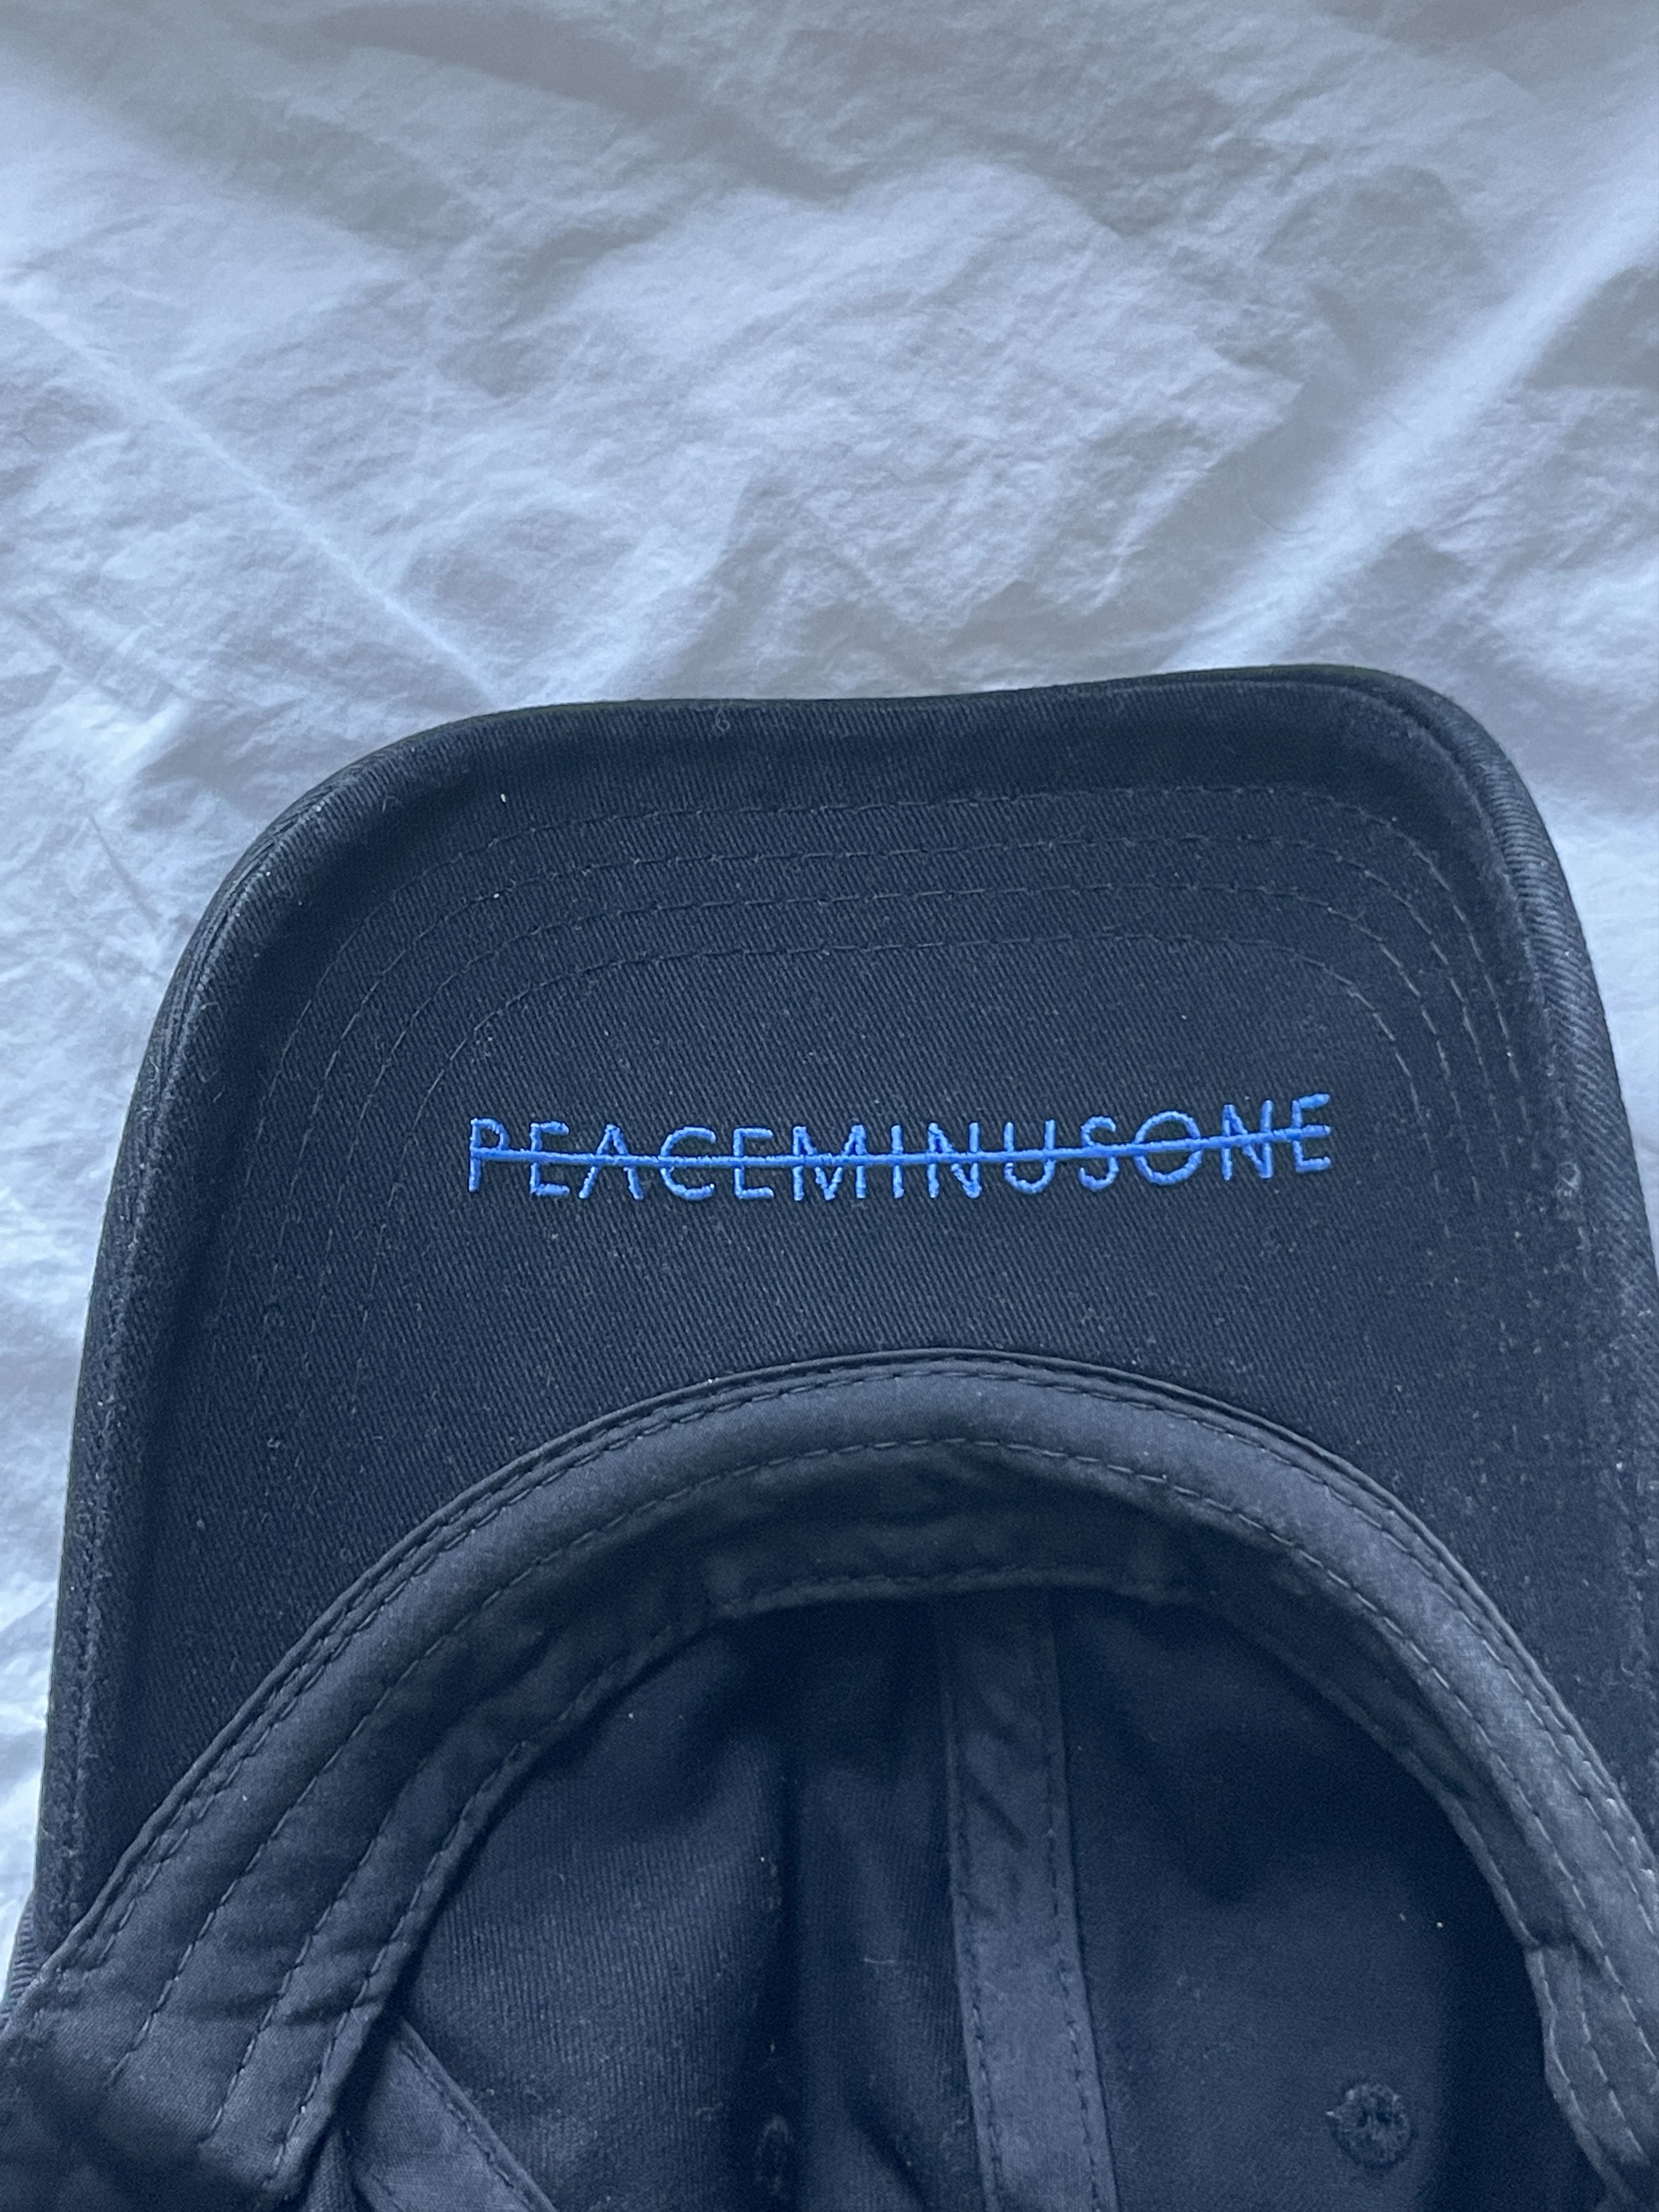 Colette Peaceminusone X Colette Shoelace cap | Grailed